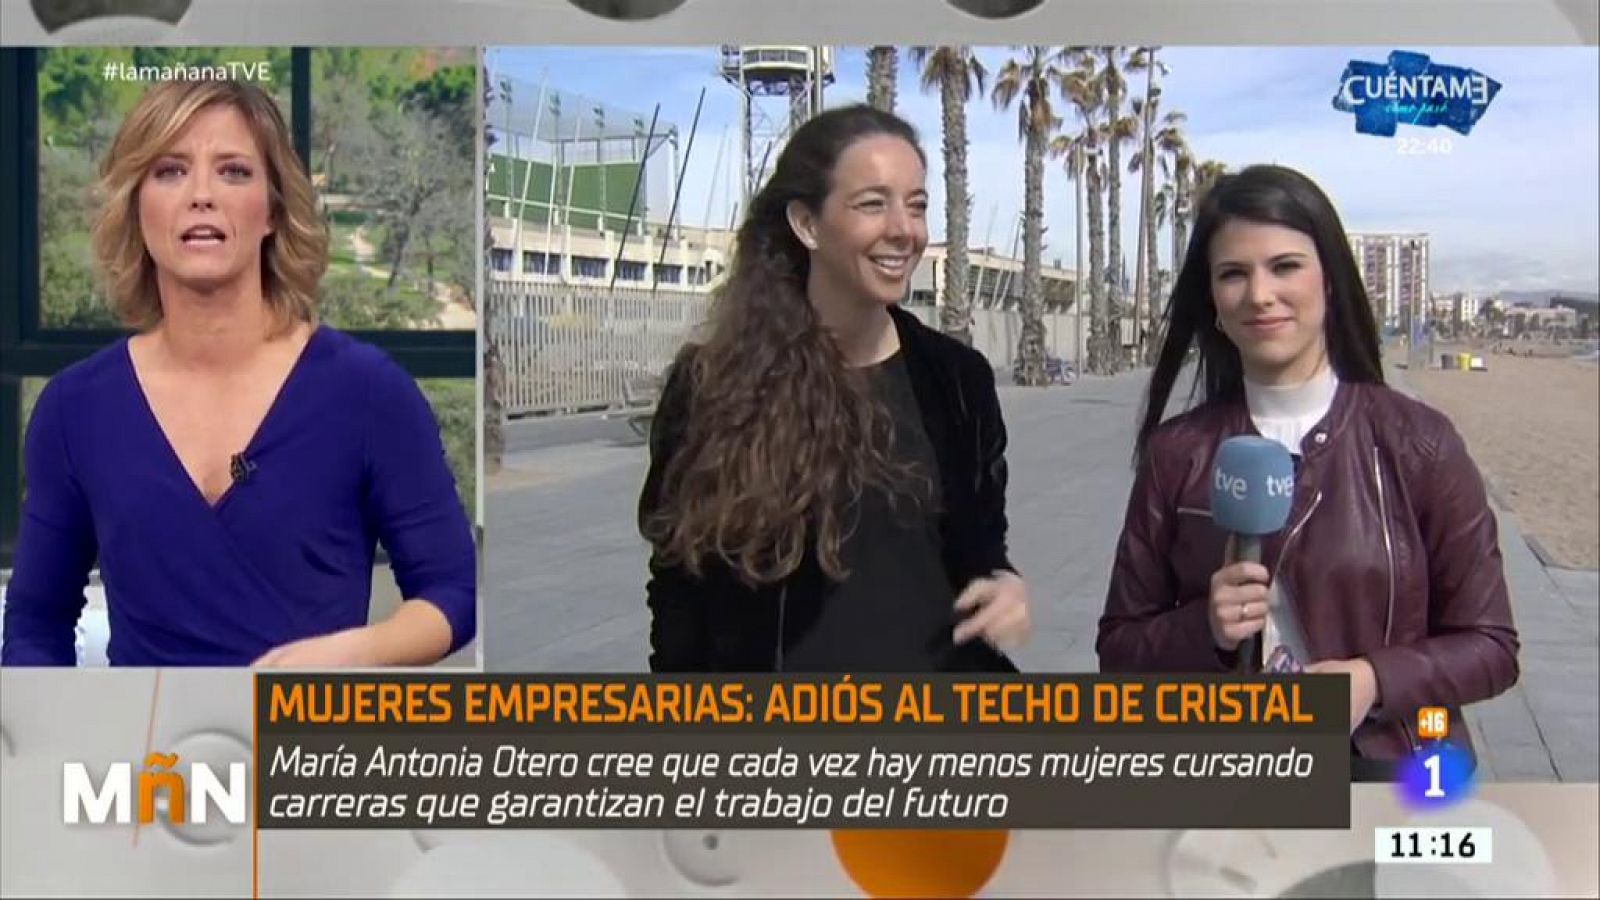  La Mañana -  El fenómeno del "techo de cristal" a debate en la Semana de la Mujer